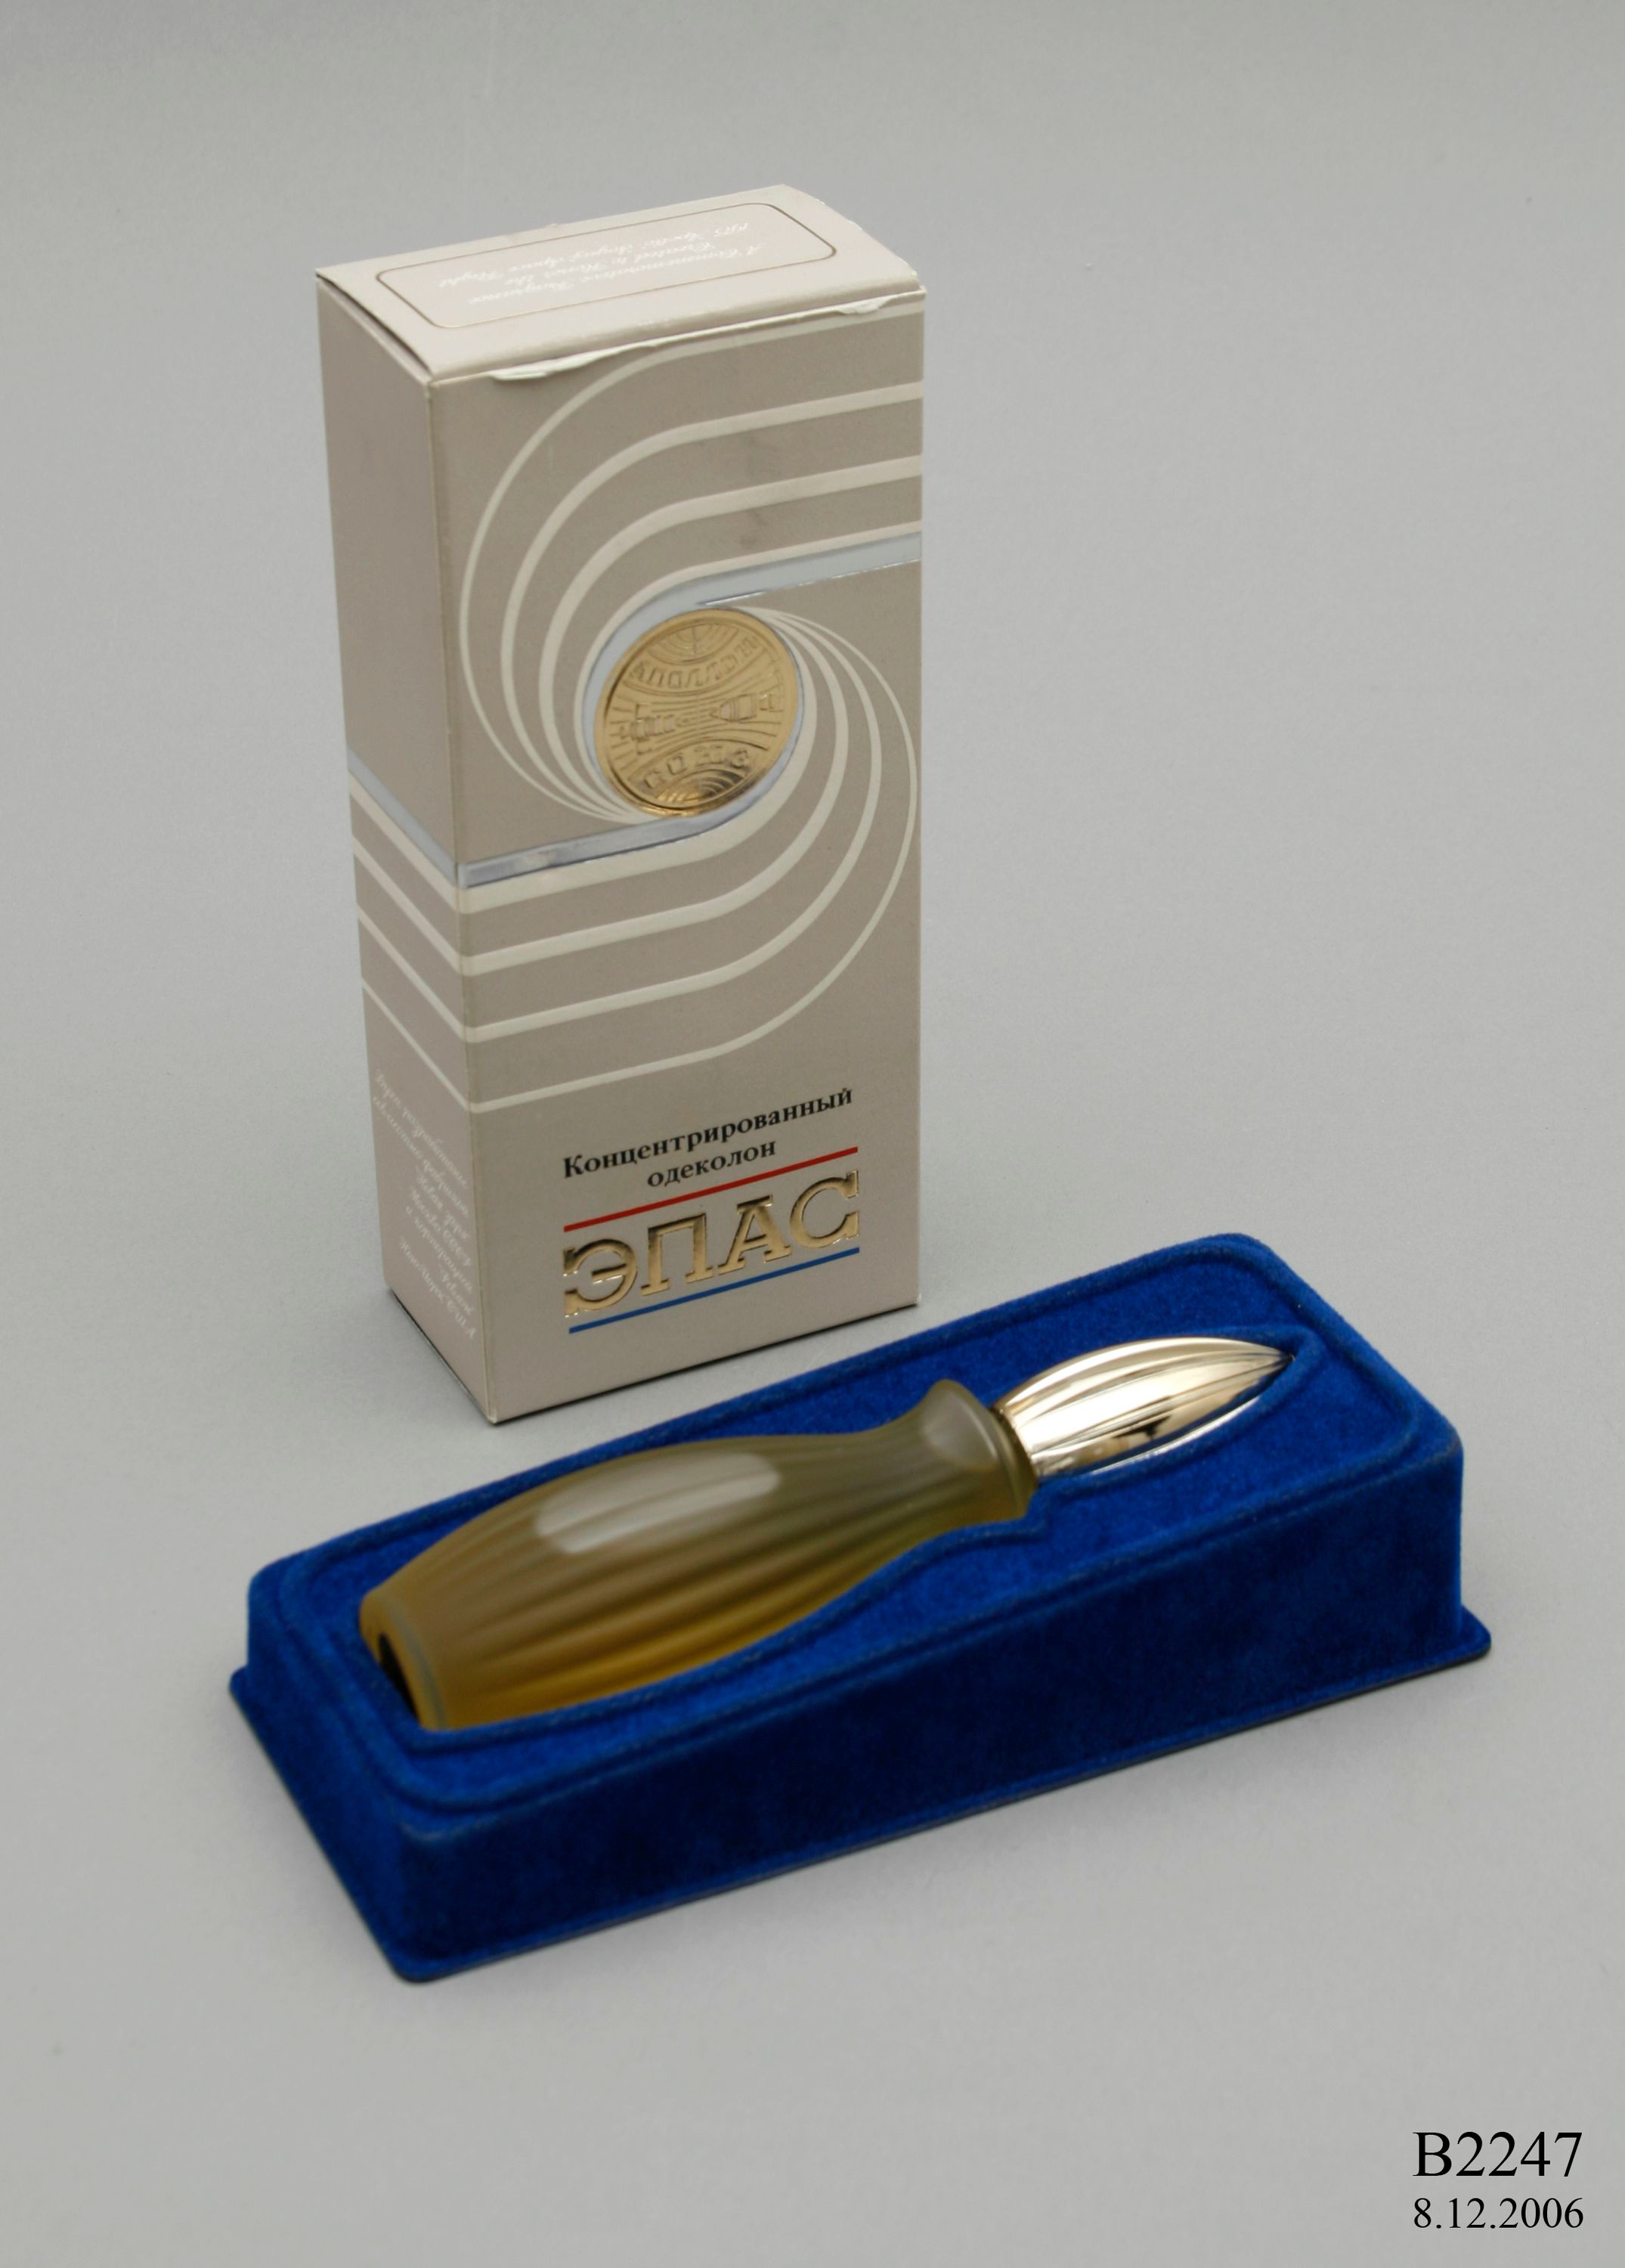 Оригинальные упаковка и&nbsp;флакон духов «ЭПАС». 1975